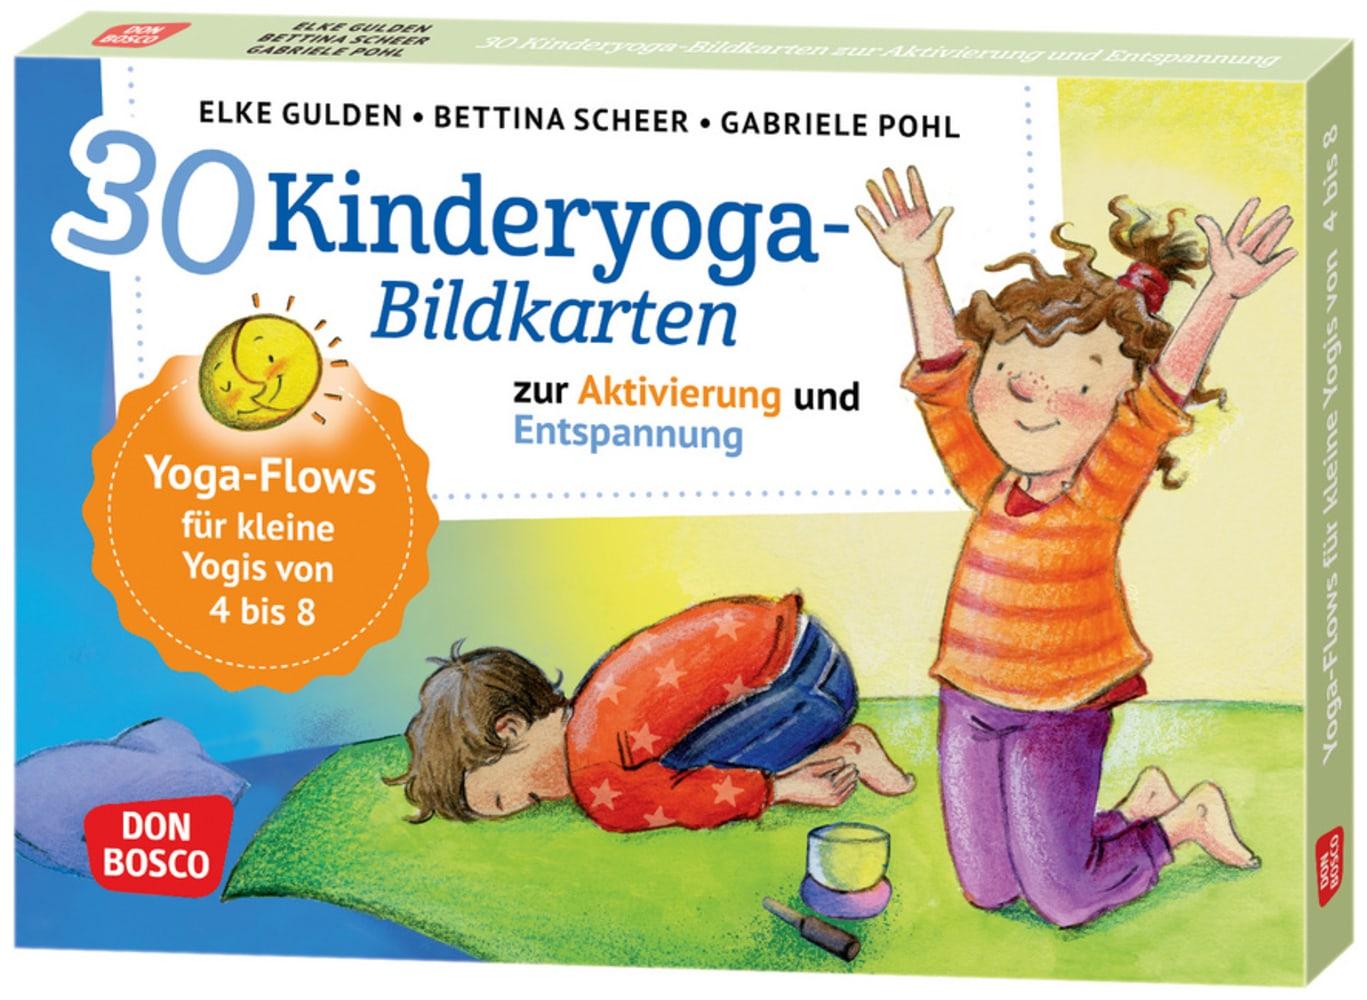 Hra/Hračka 30 Kinderyoga-Bildkarten zur Aktivierung und Entspannung Elke Gulden